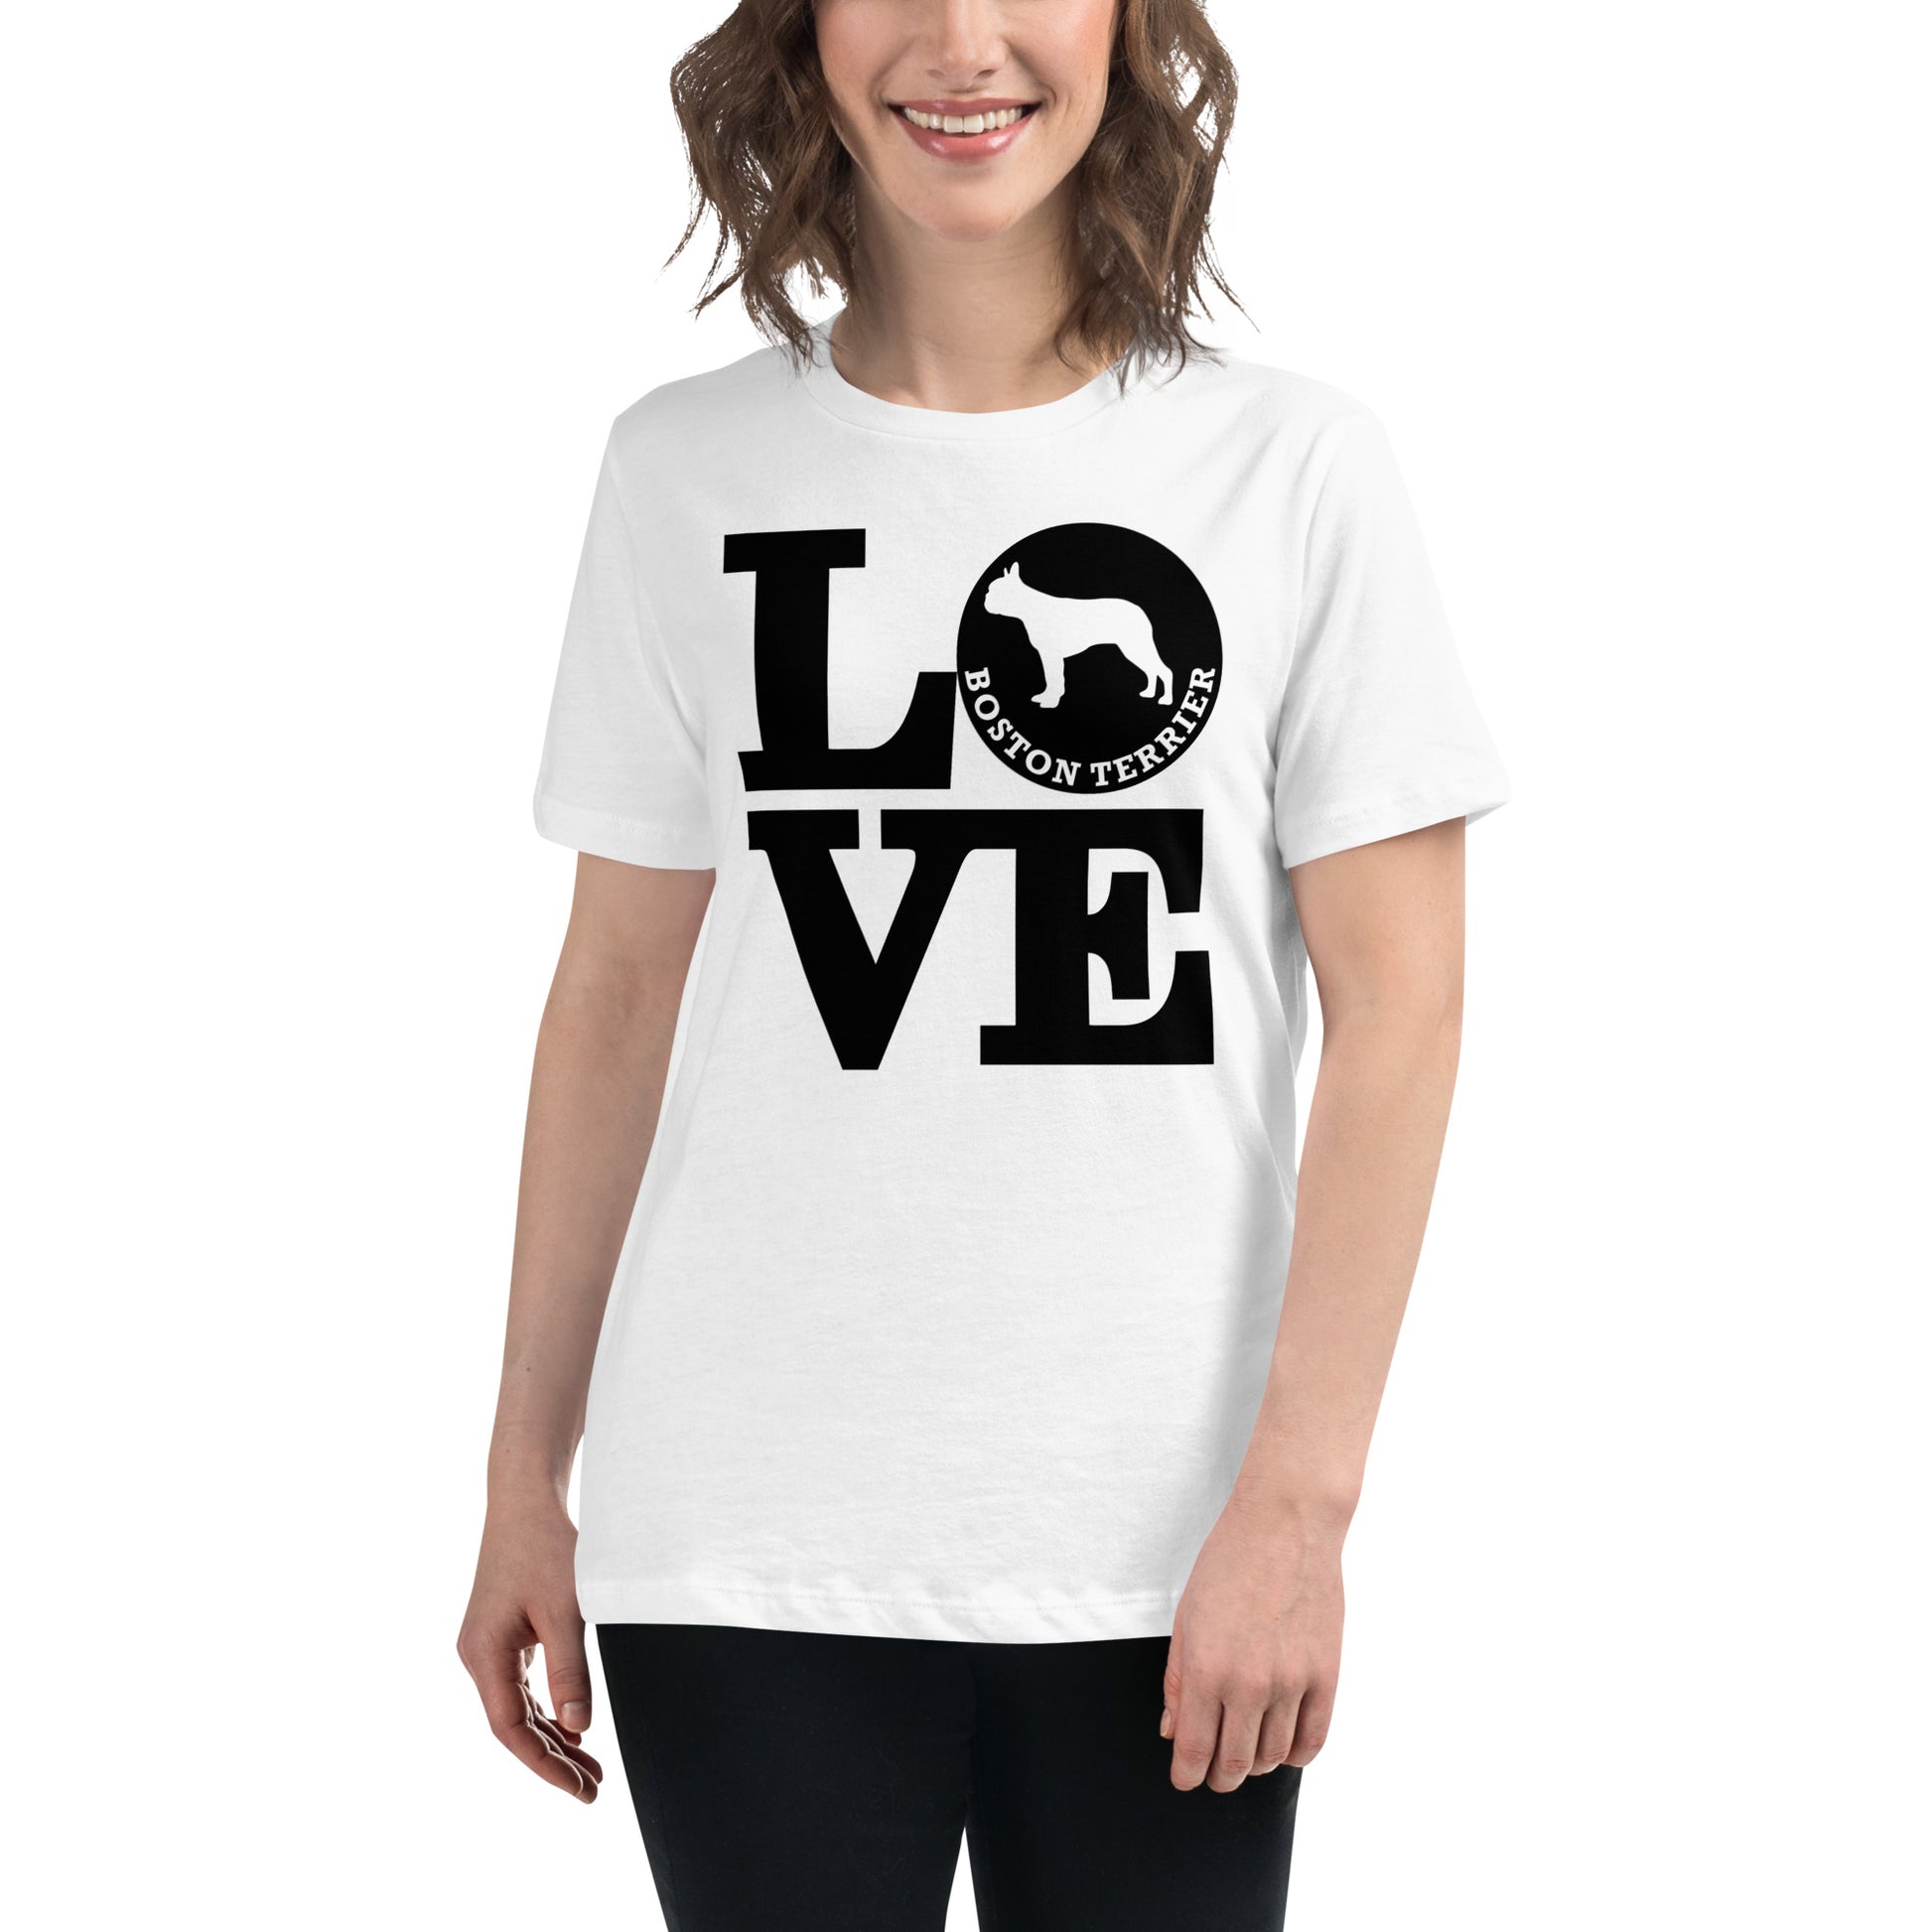 Boston Terrier Love women’s white t-shirt by Dog Artistry.